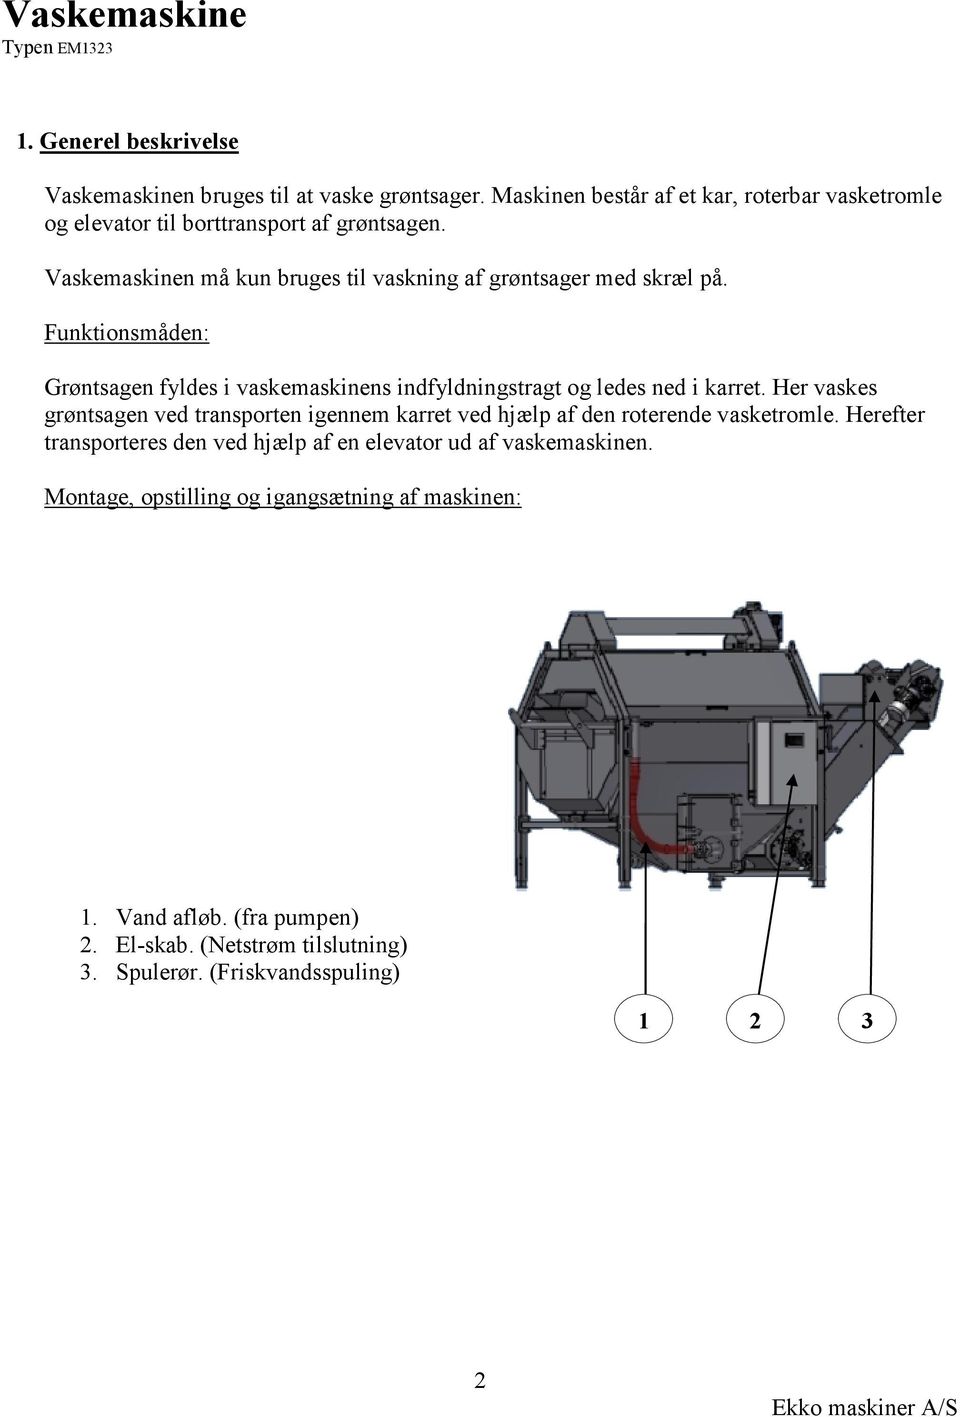 Vaskemaskine. EKKO maskiner A/S. Beskrivelse for typen: EM 1323 Vasker -  PDF Gratis download